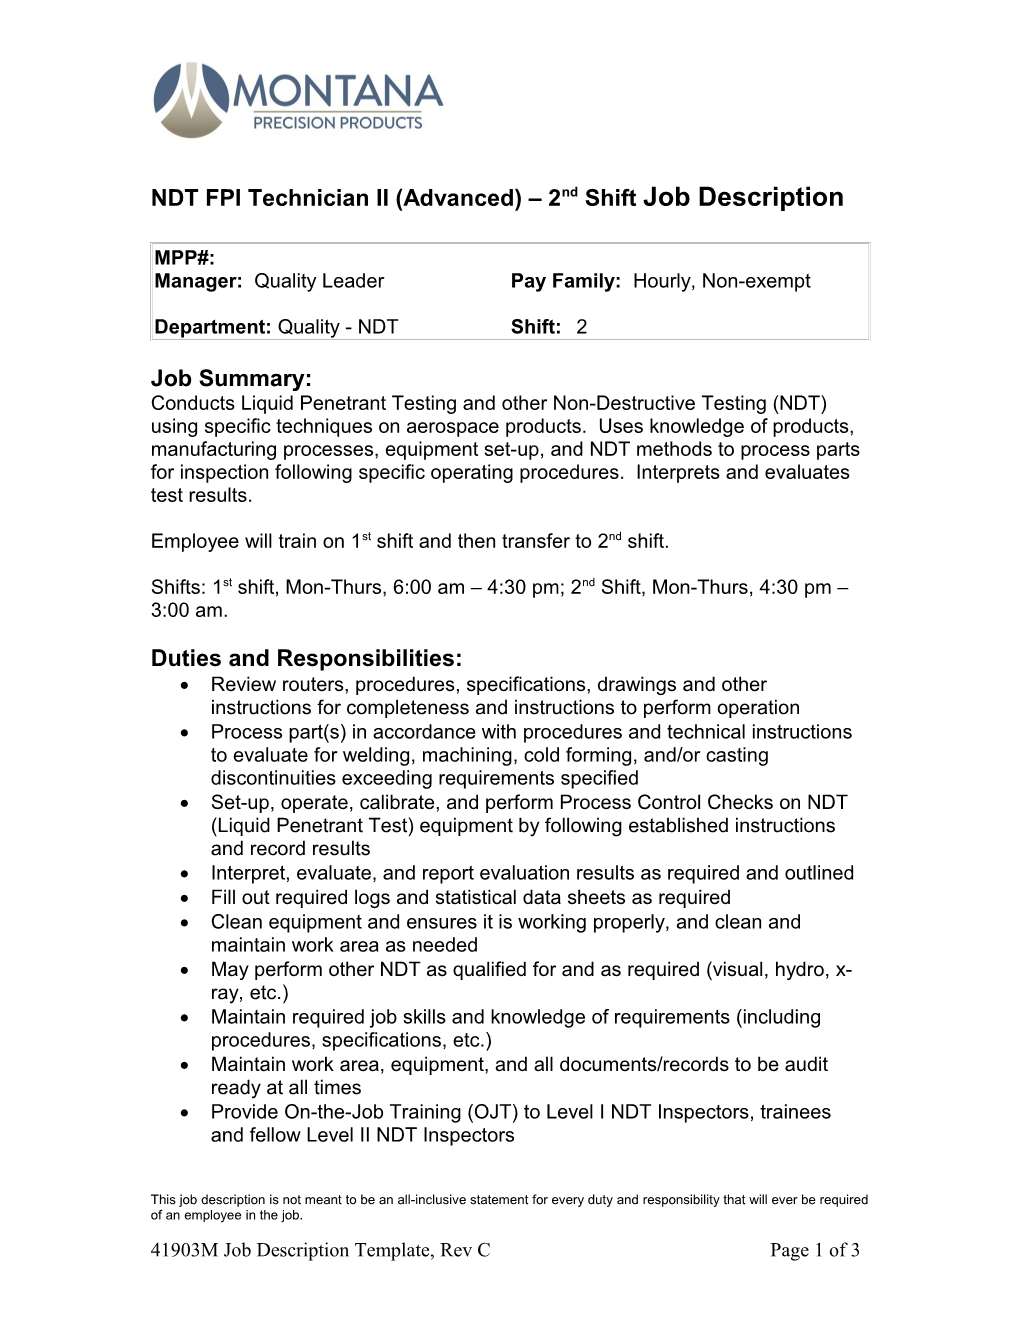 NDT FPI Technician II (Advanced) 2Nd Shift Job Description